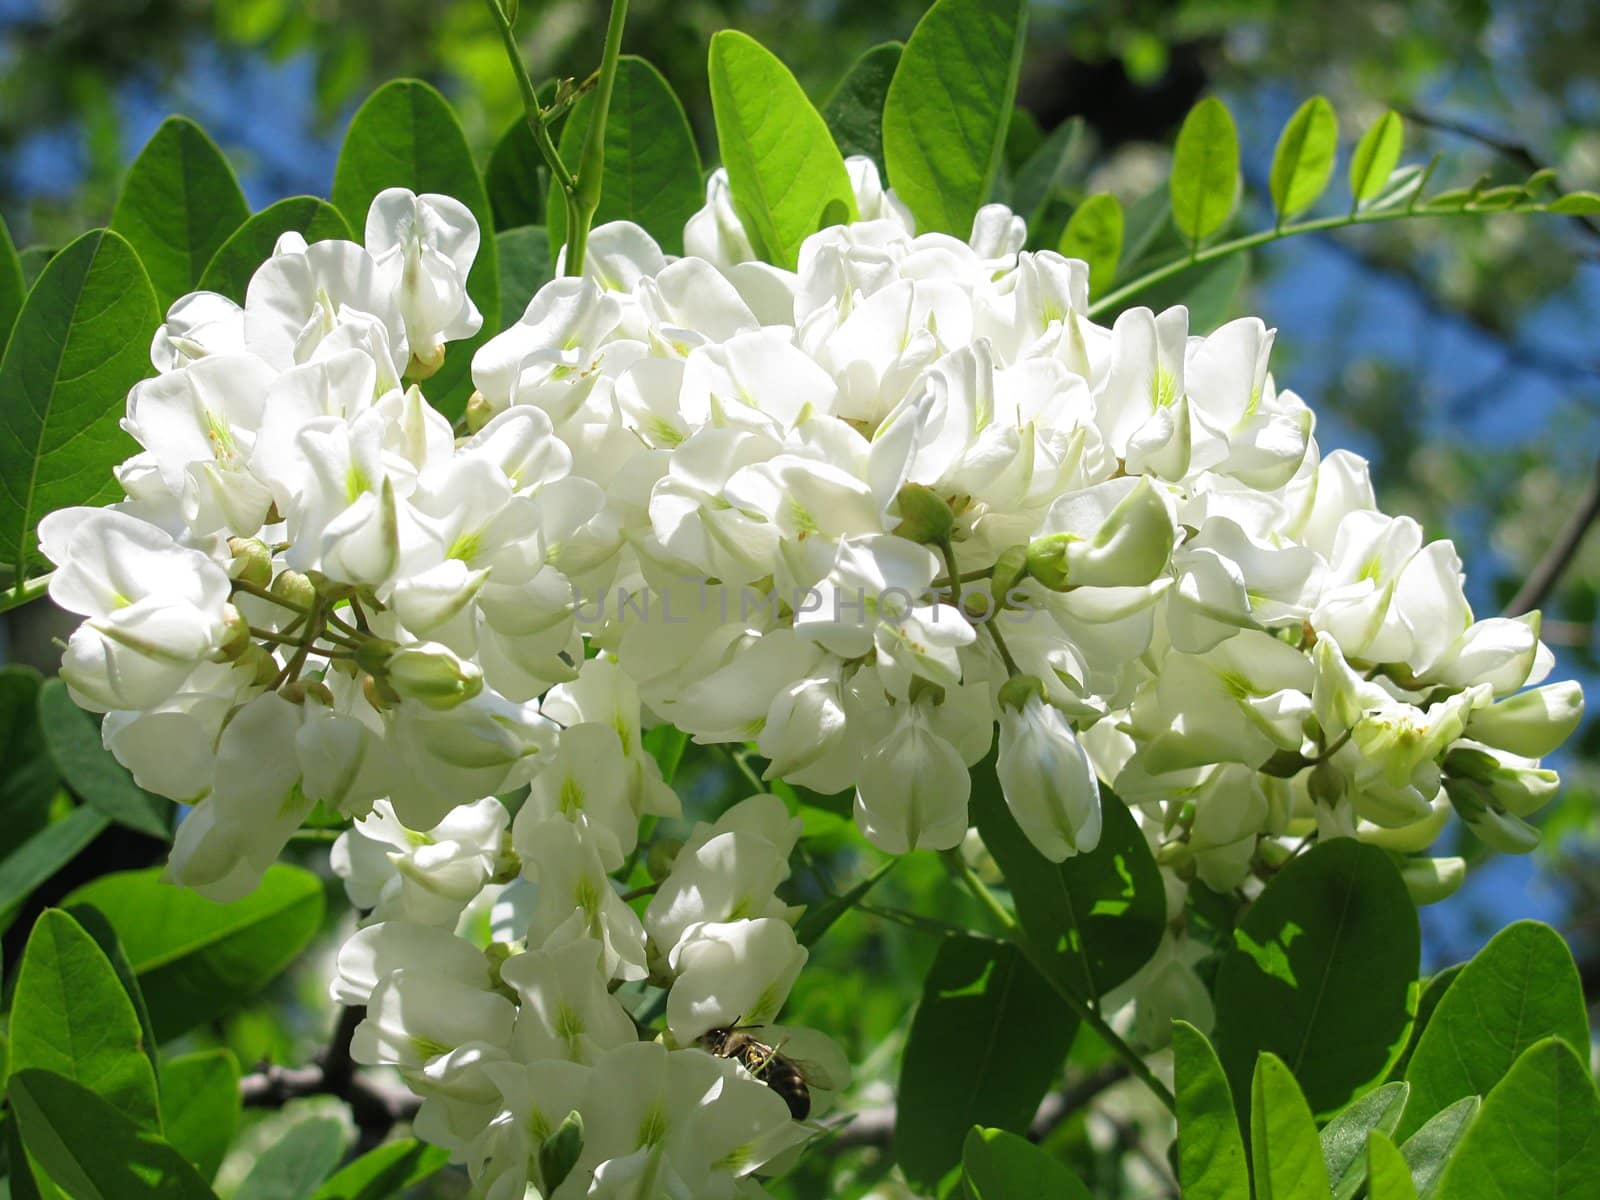 acacia blossom by romantiche